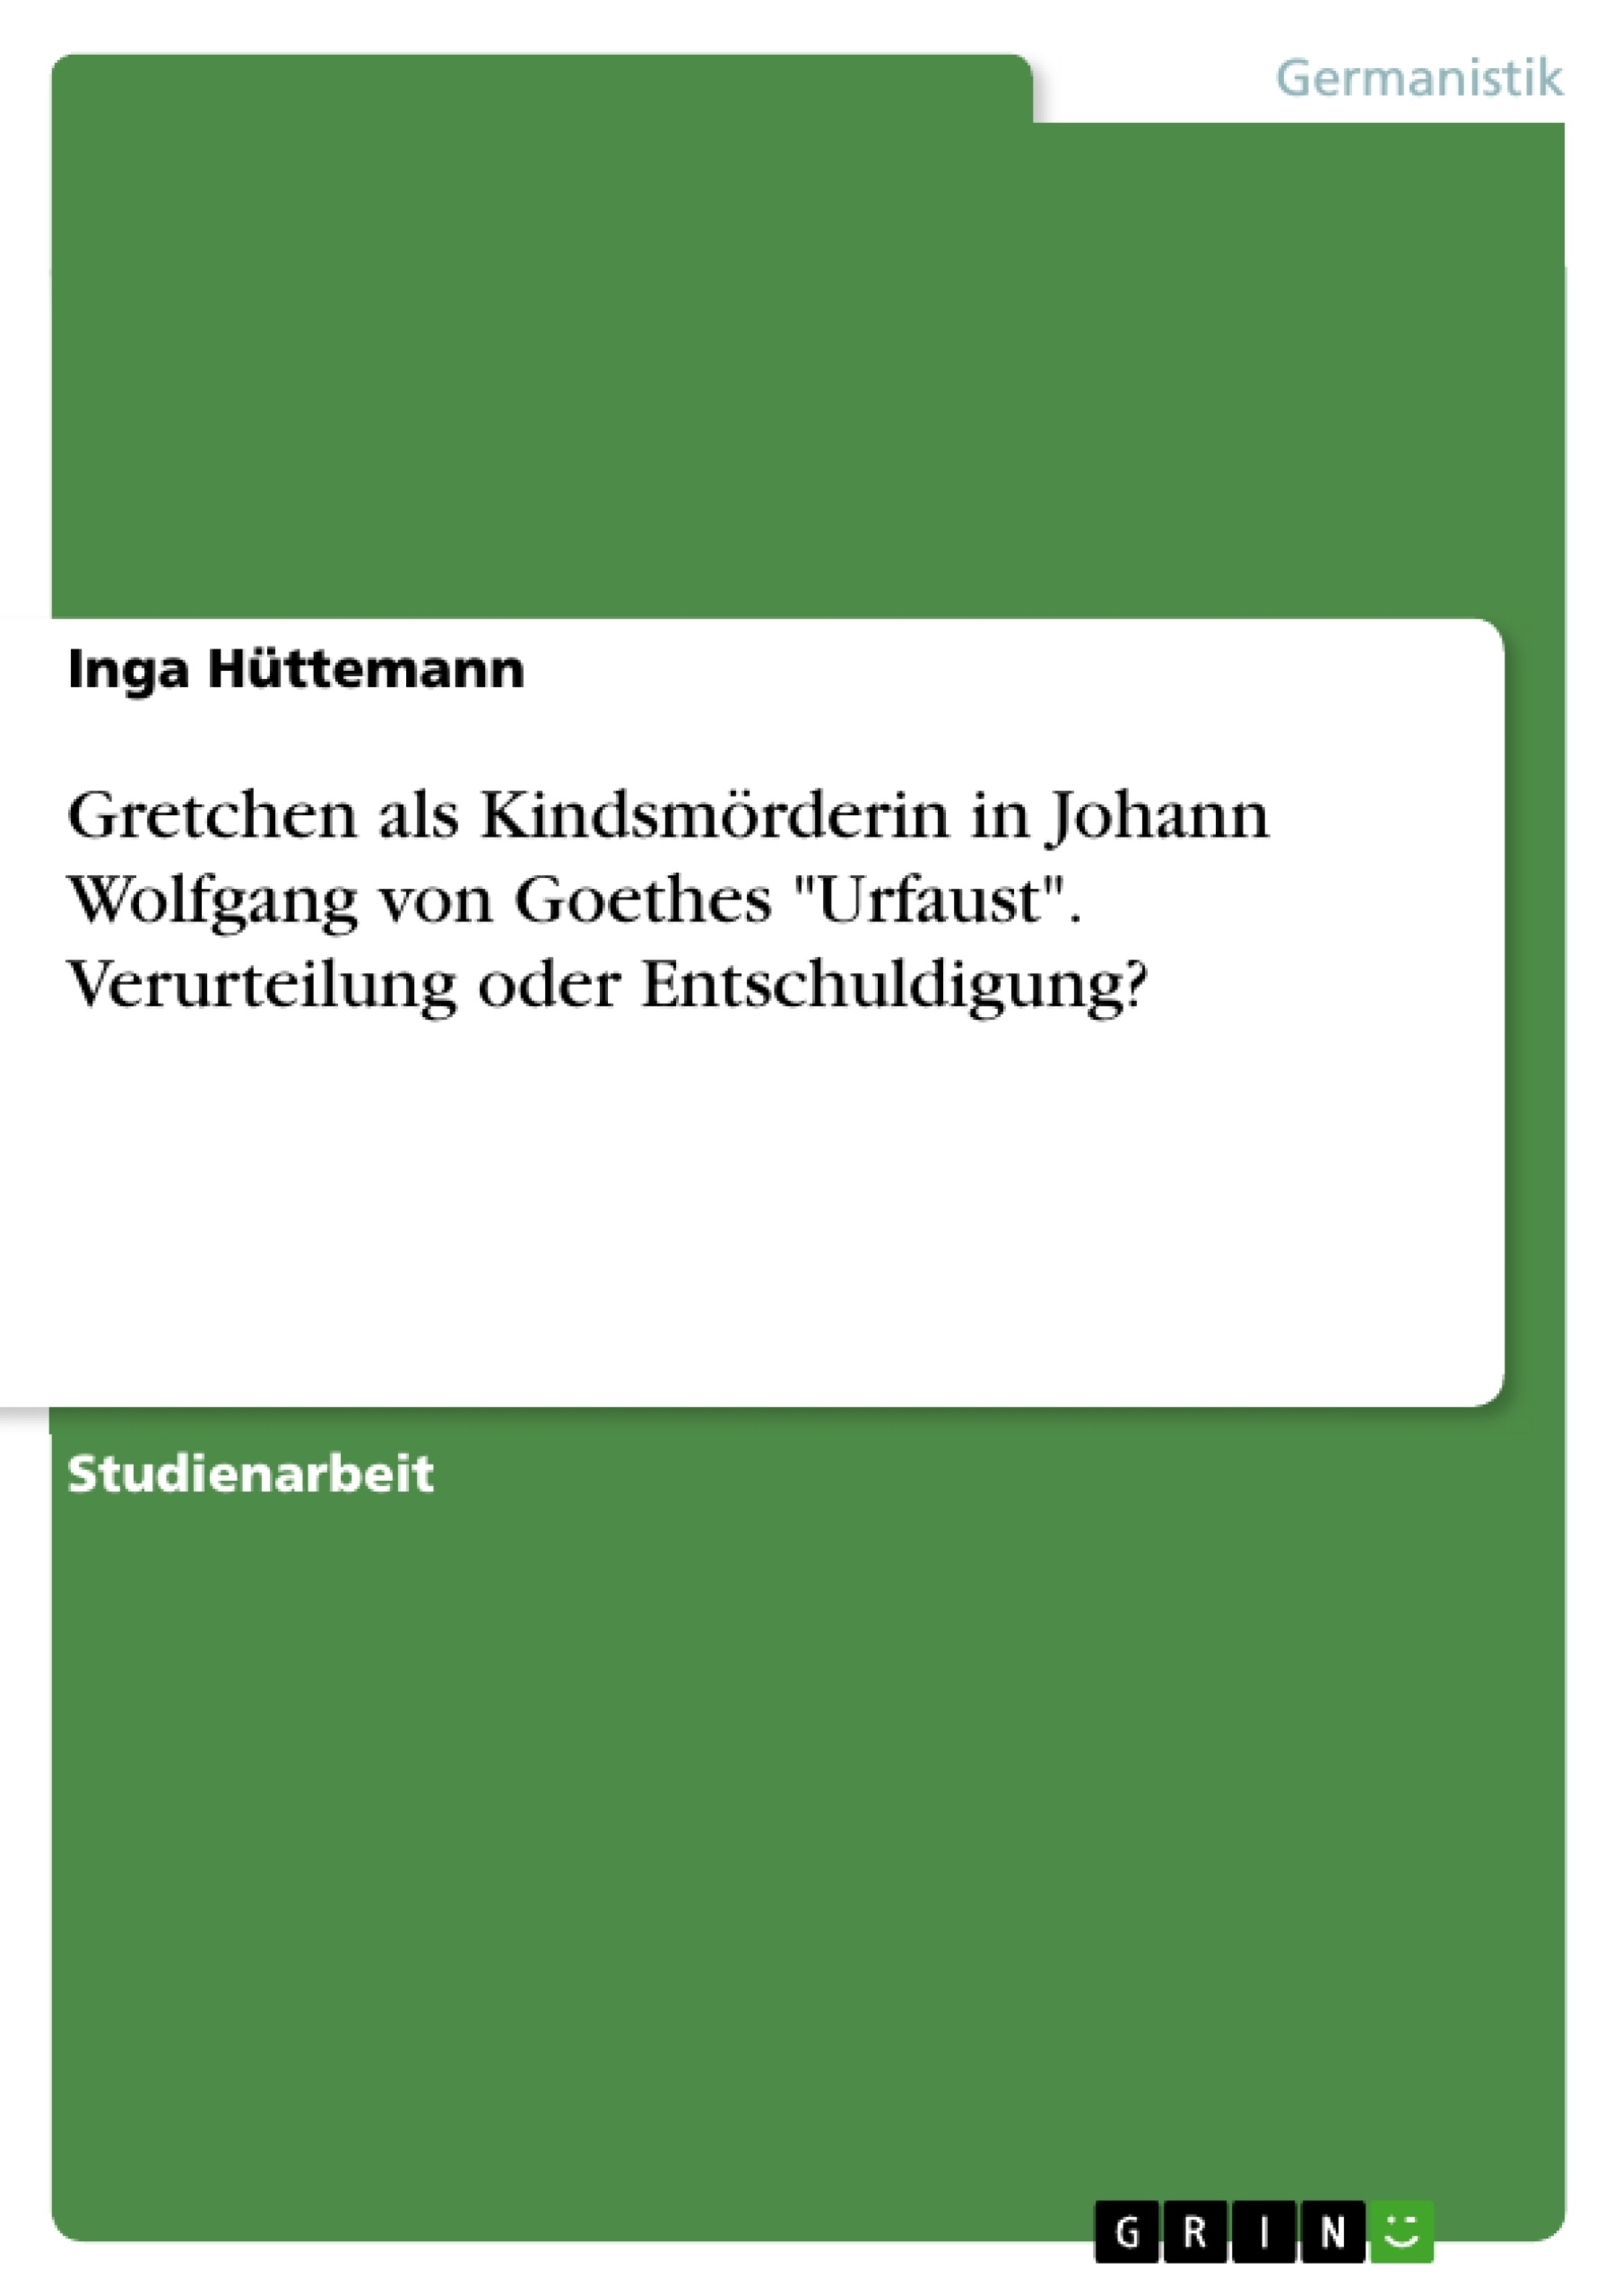 Titre: Gretchen als Kindsmörderin in Johann Wolfgang von Goethes "Urfaust". Verurteilung oder Entschuldigung?